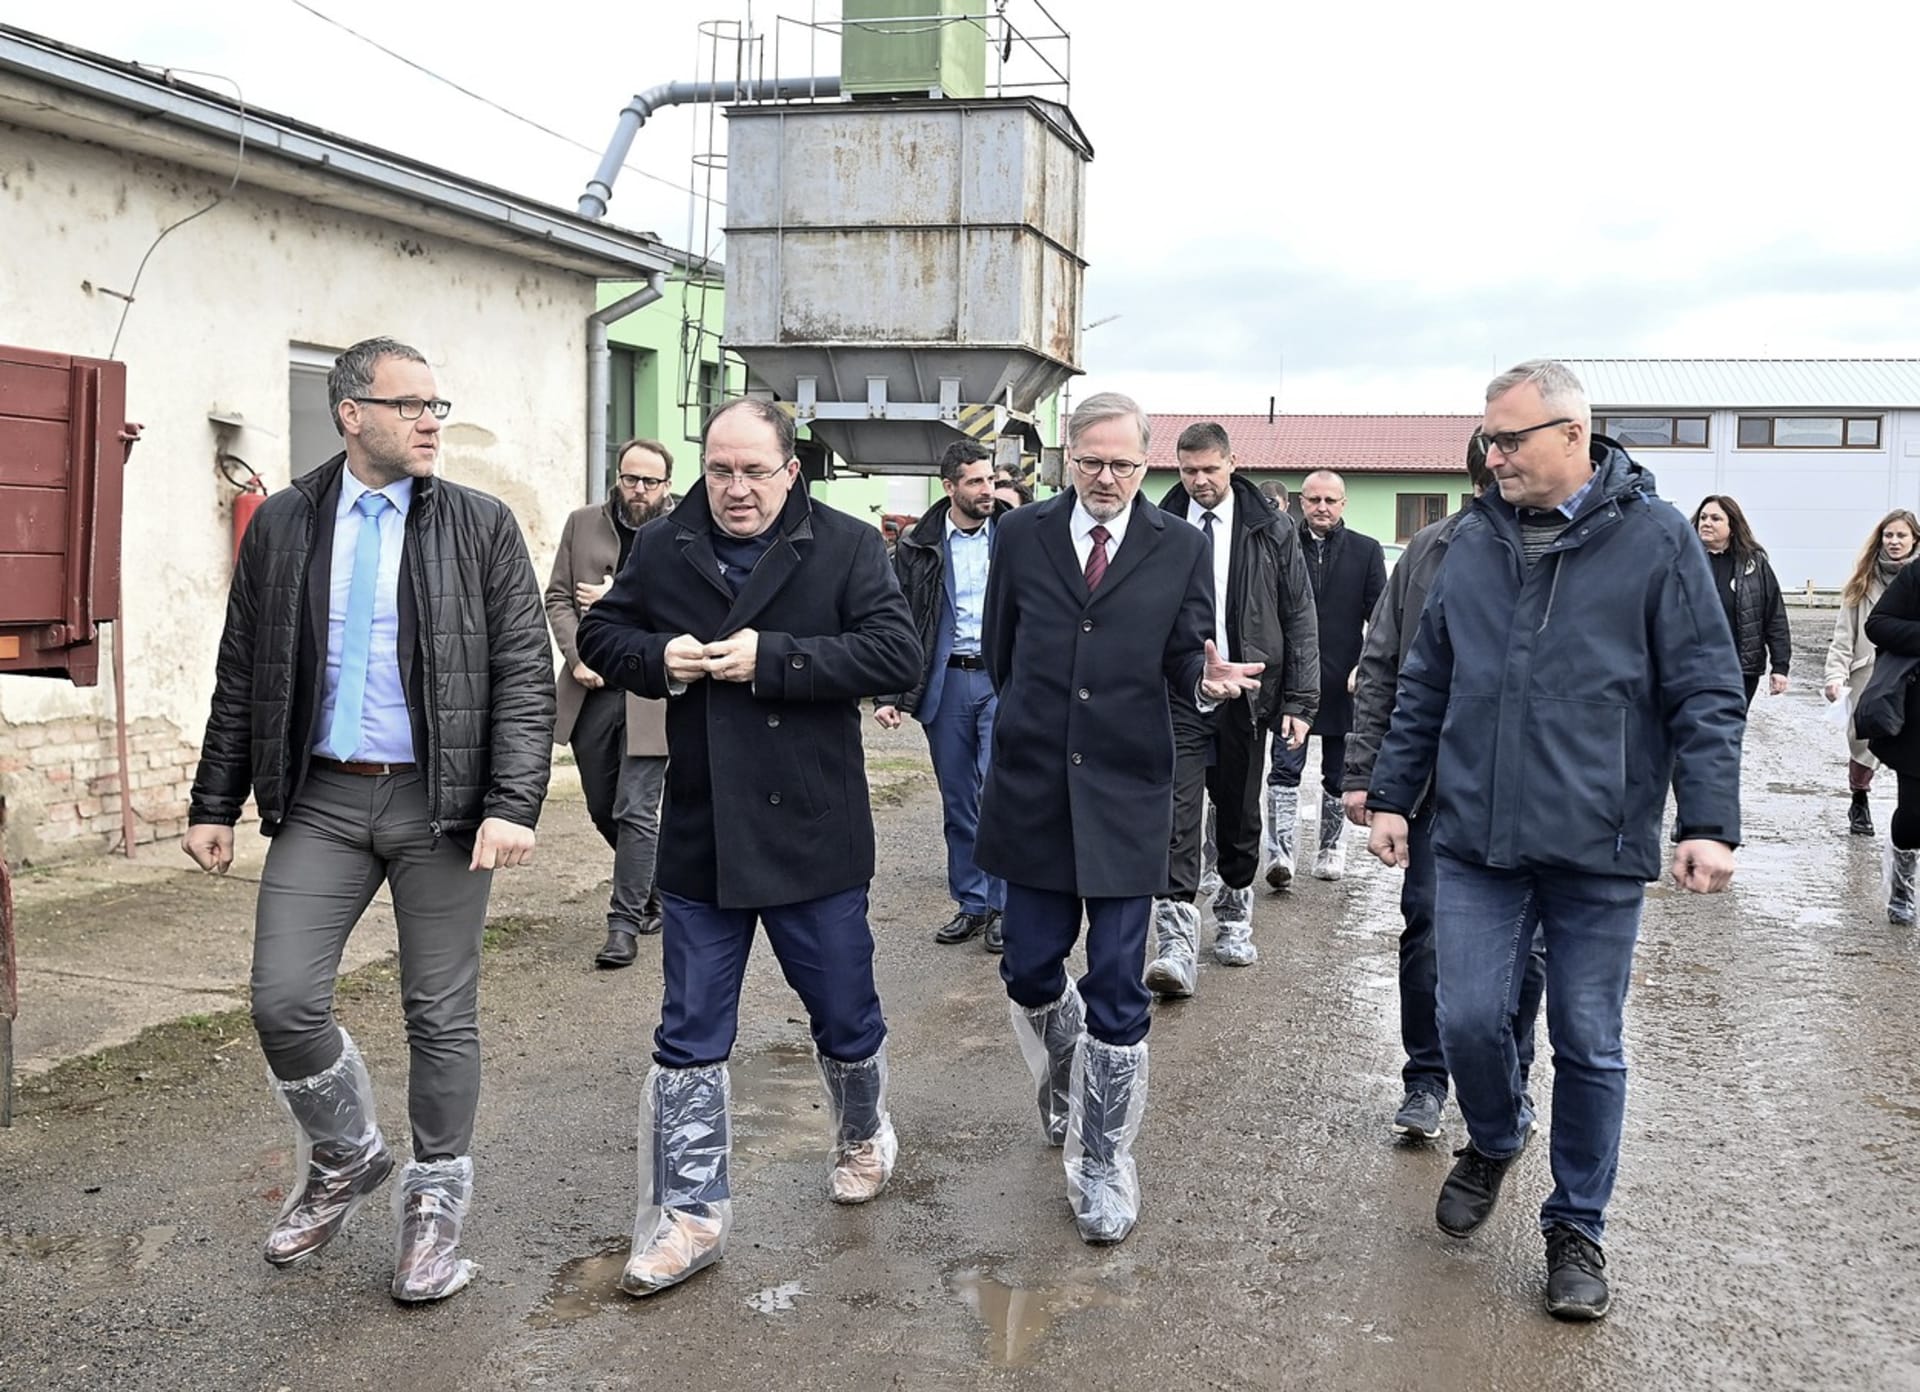 Premiér Petr Fiala (třetí zleva) a ministr zemědělství Marek Výborný (druhý zleva) se setkali se zemědělci v družstvu Pooslaví Nová Ves. Vpravo jednatel družstva Lukáš Jurečka.